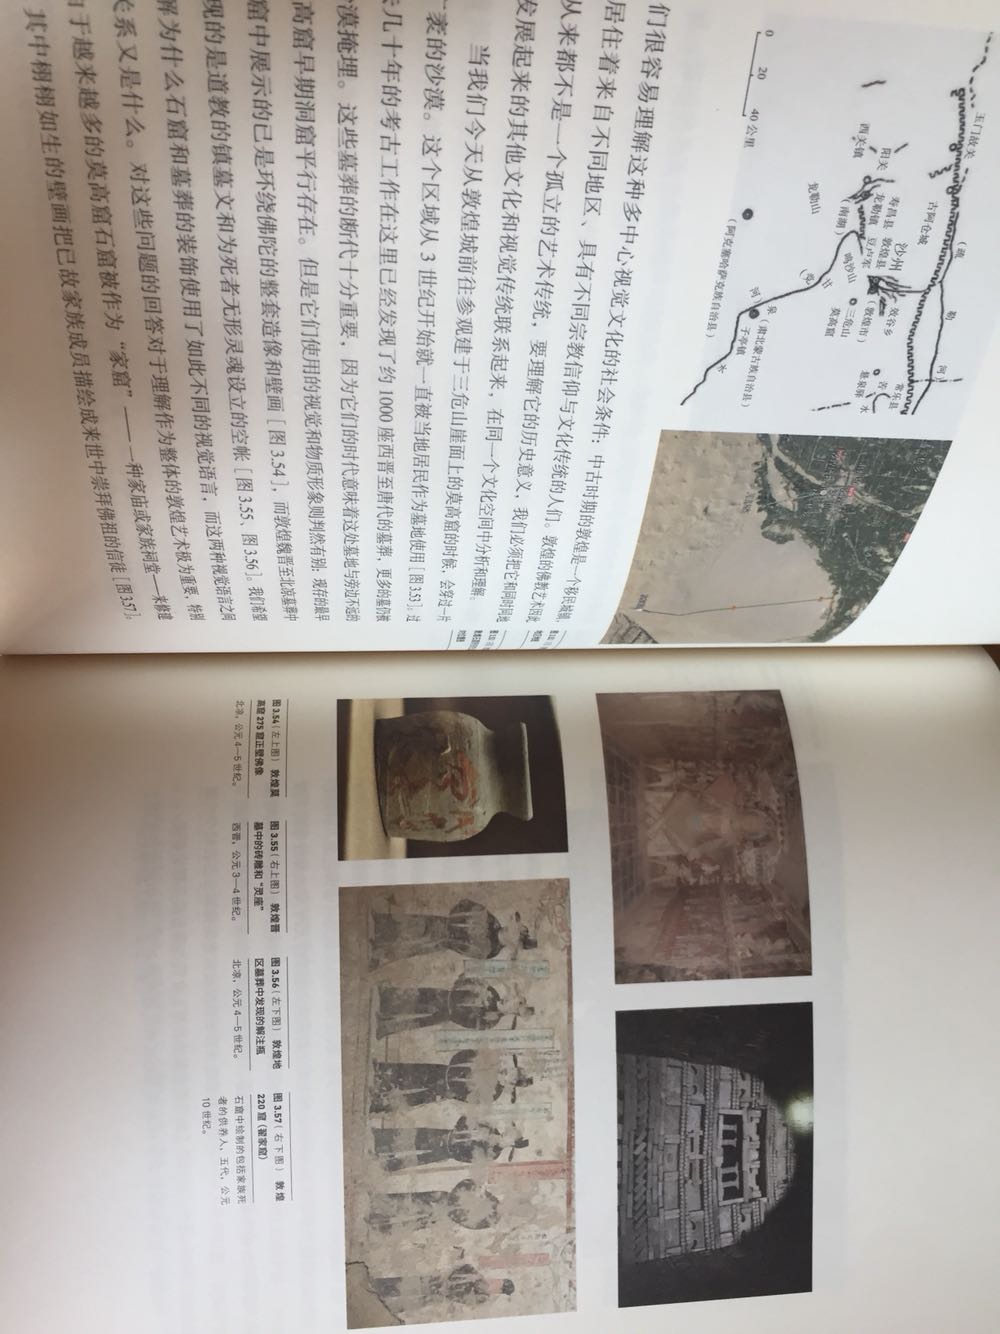 巫鸿先生在中国大陆所作的一系列学术讨论和思考，对艺术考古和美术史研究均有极大启发意义。纸张油墨都很好。物流也很赞。